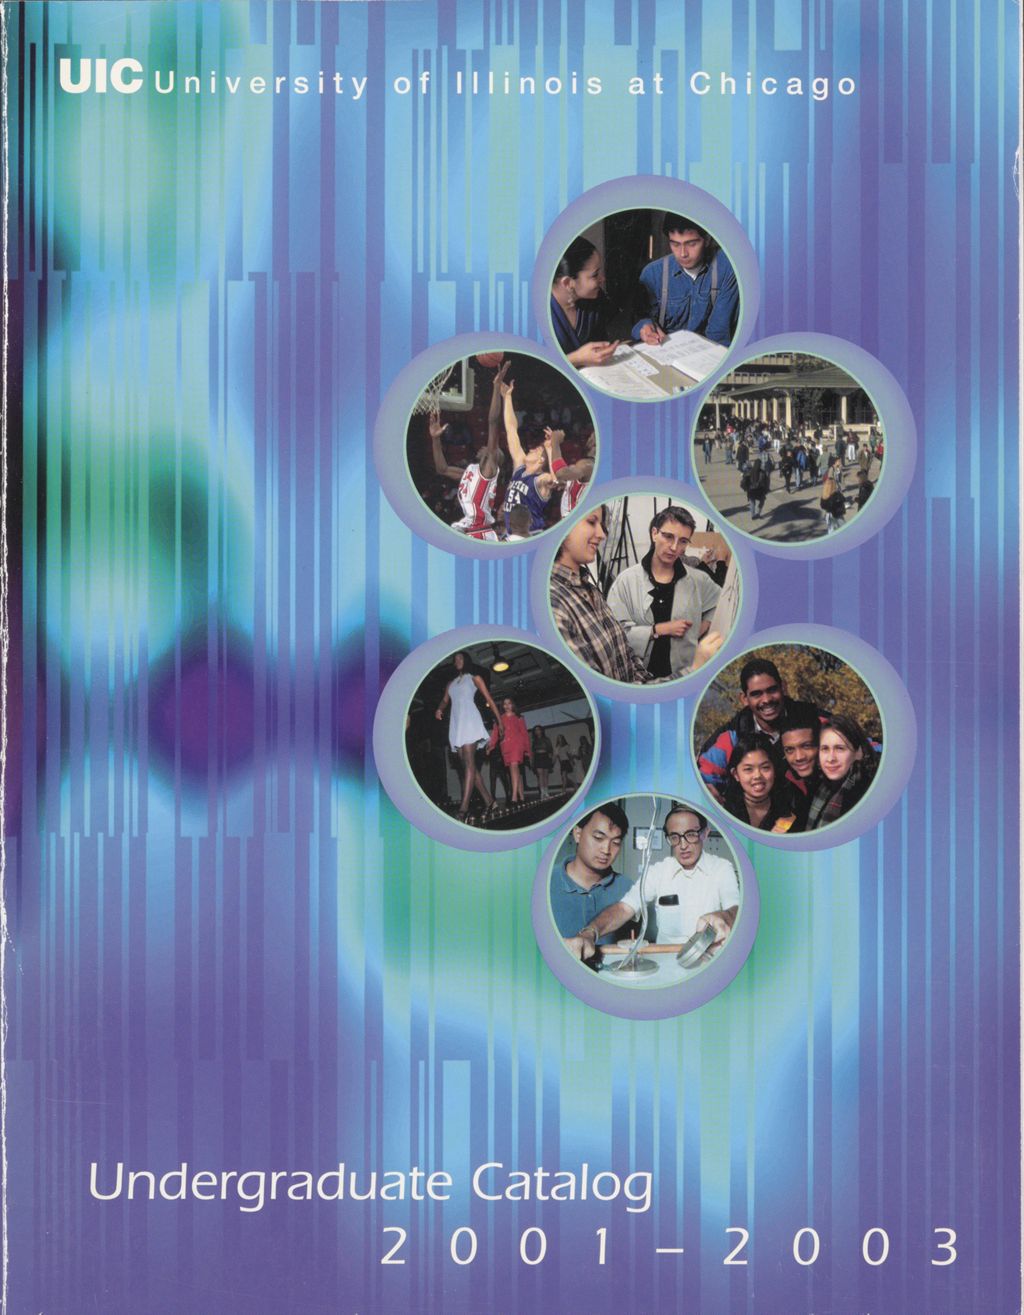 Miniature of Undergraduate Catalog, 2001-2003